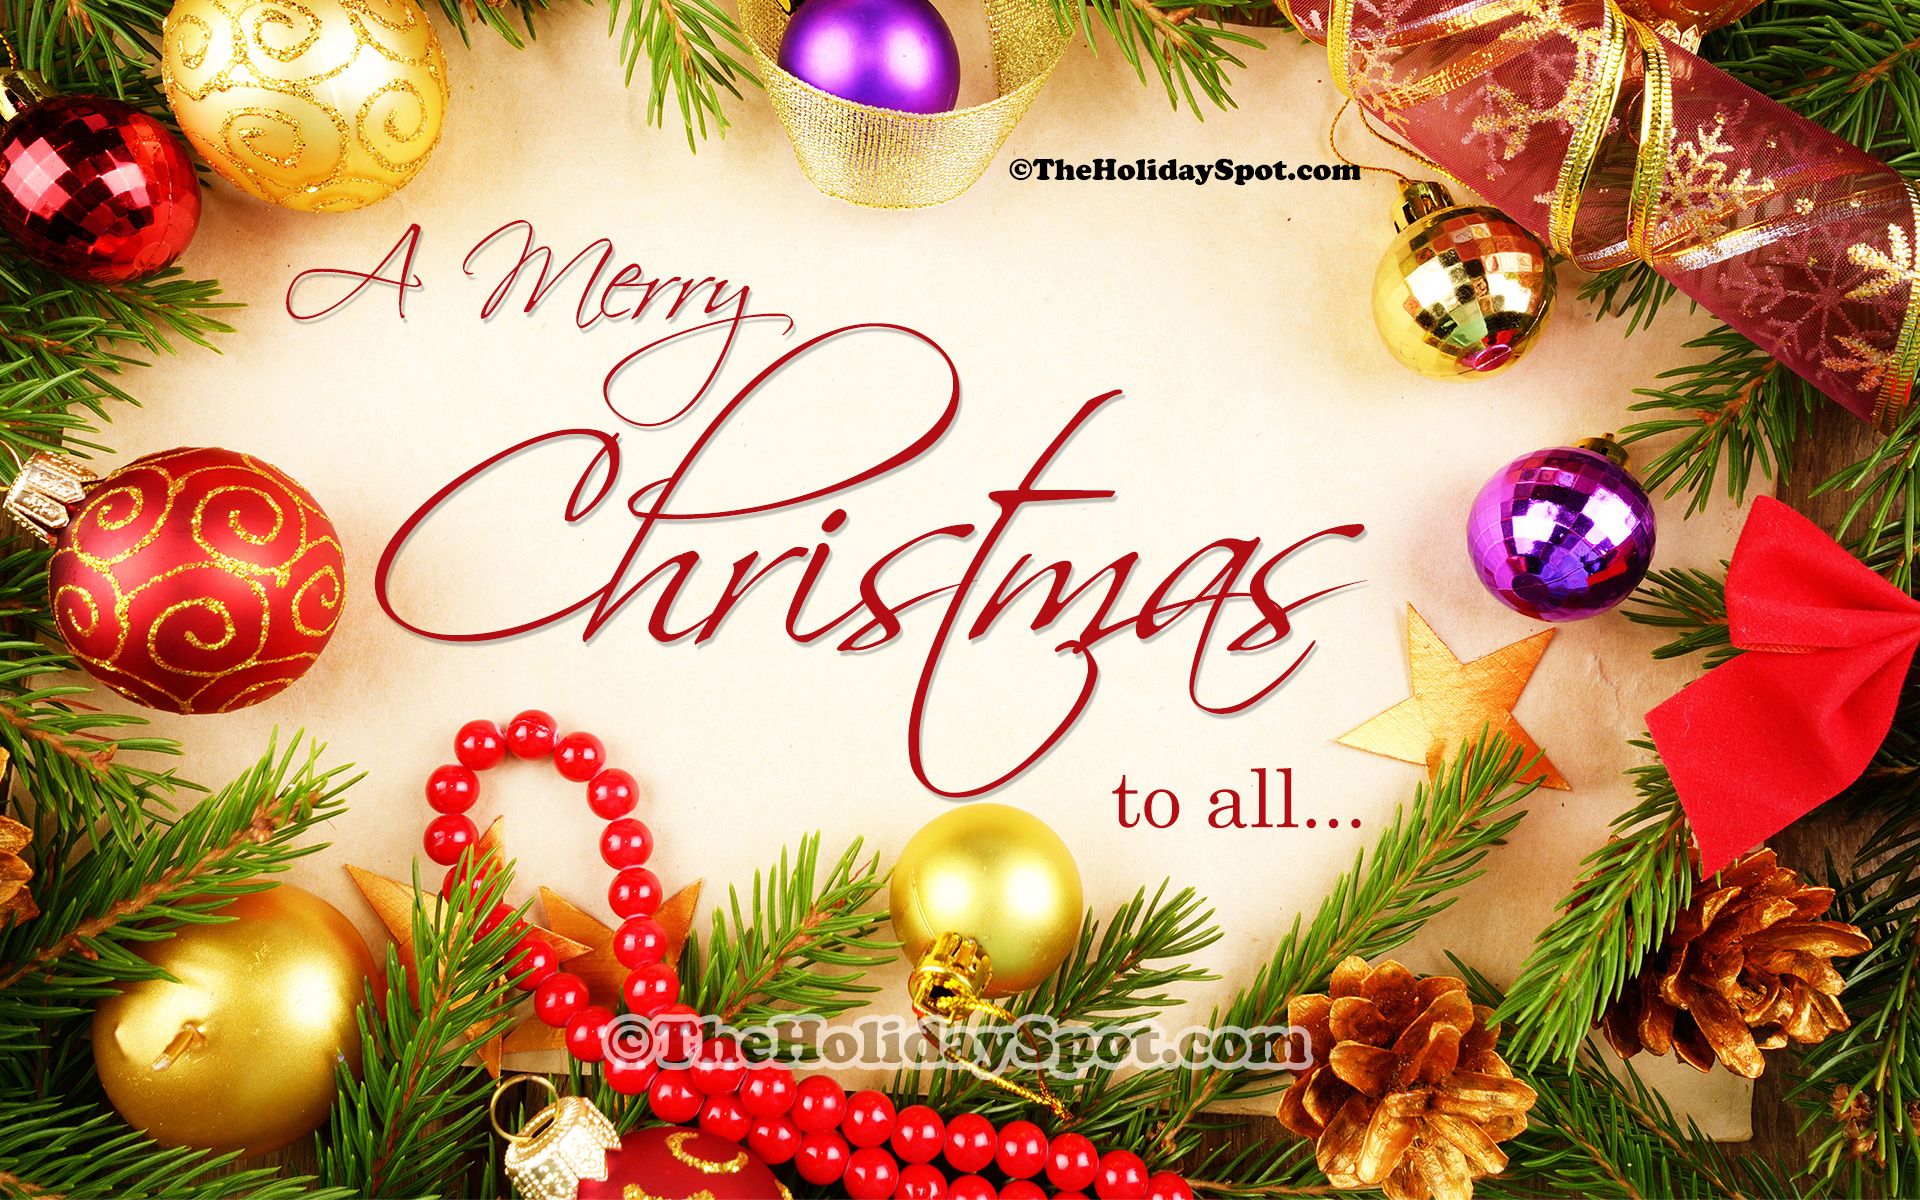 deseos de navidad fondos de pantalla,nochebuena,texto,navidad,saludo,decoración navideña